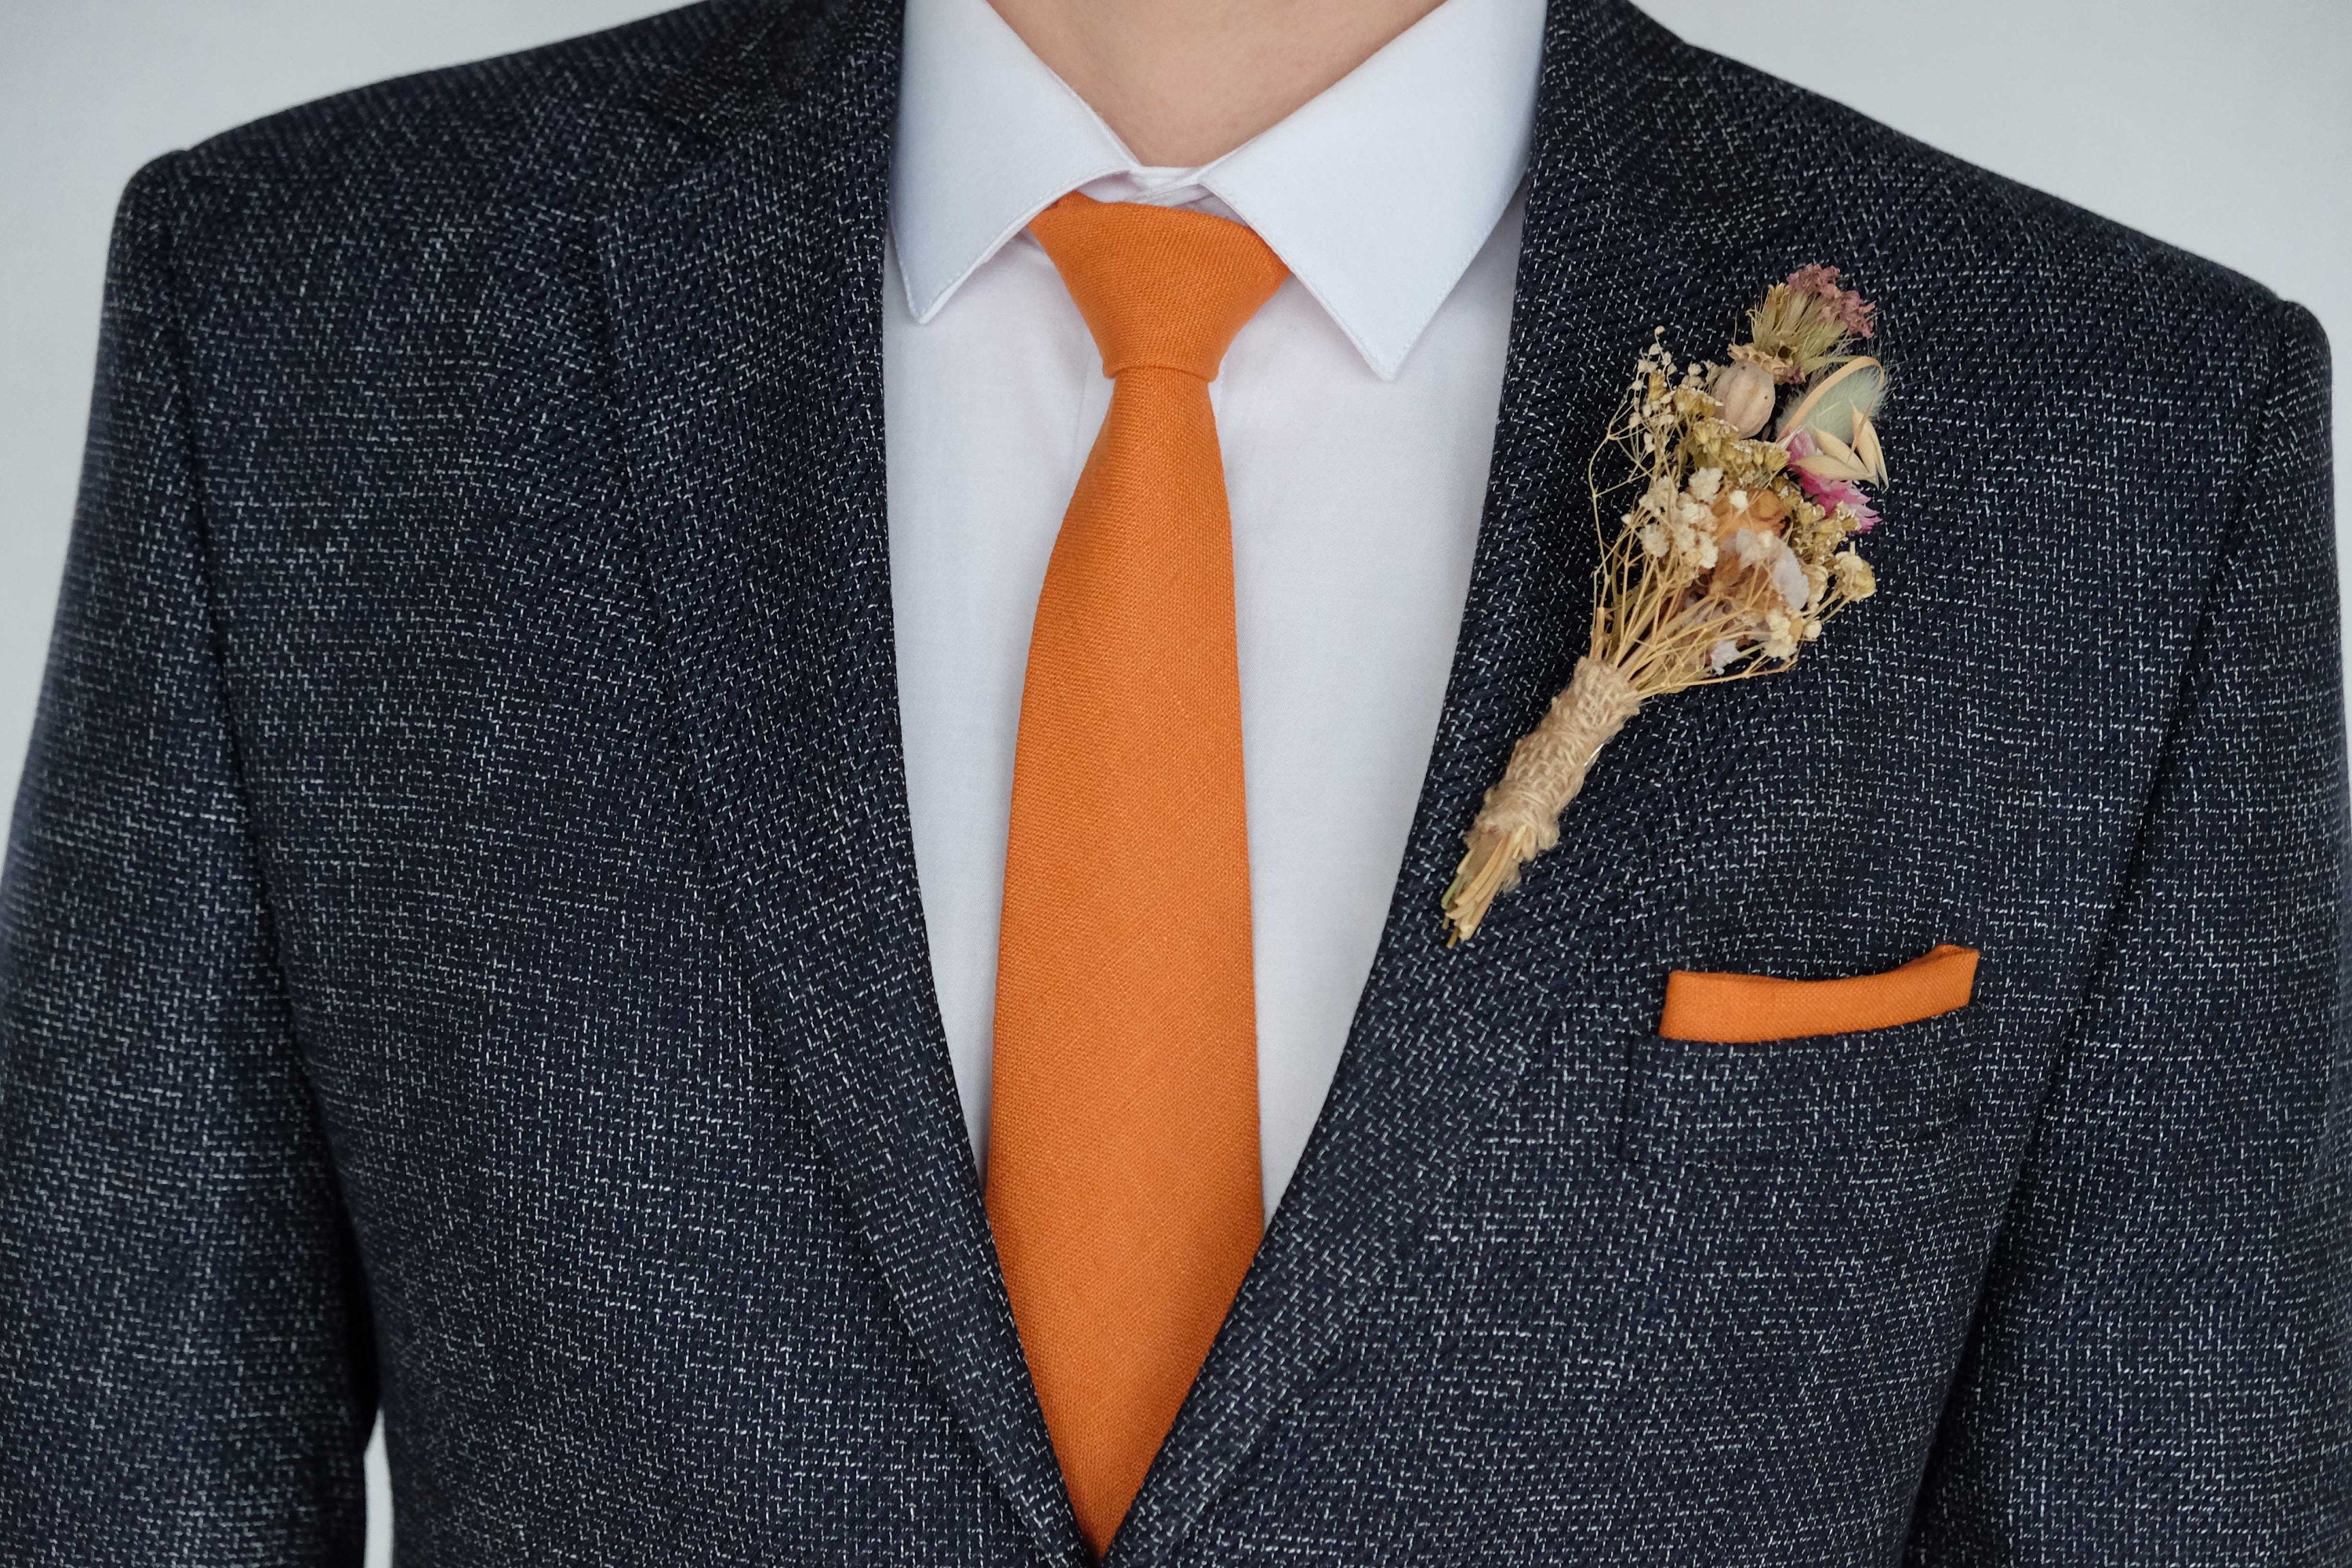 Ankara Necktie, Wedding Necktie, Orange Necktie, Groomsmen, Father’s Day  Gifts